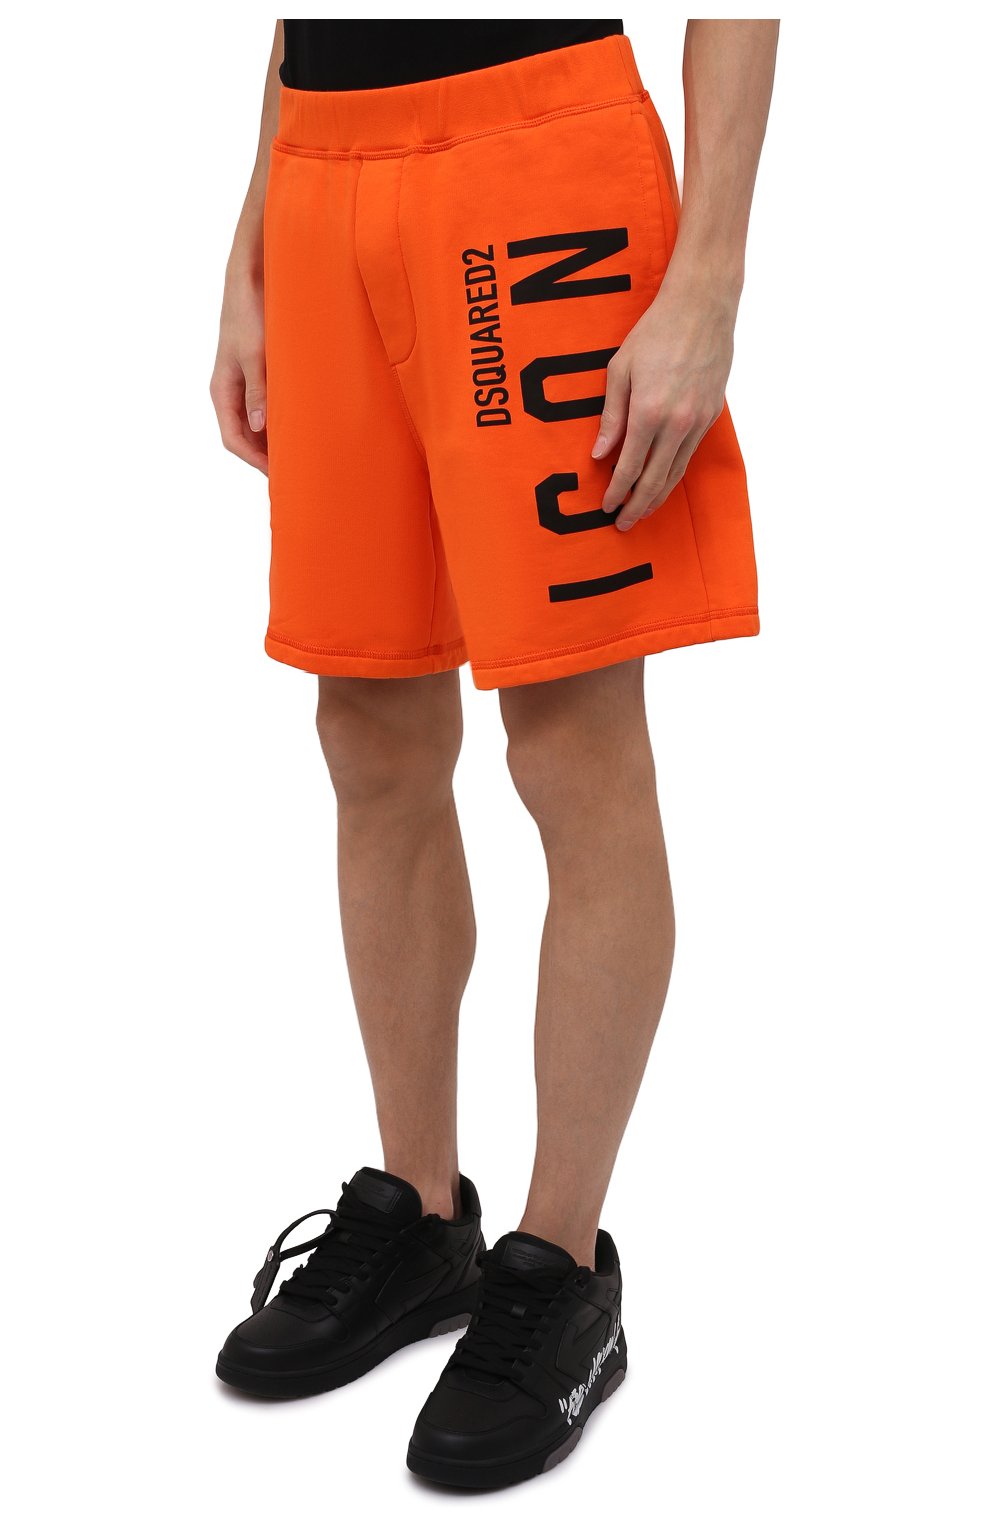 Мужские хлопковые шорты DSQUARED2 оранжевого цвета, арт. S79MU0029/S25516 | Фото 3 (Длина Шорты М: До колена; Случай: Повседневный; Стили: Гранж; Принт: С принтом; Материал внешний: Хлопок)